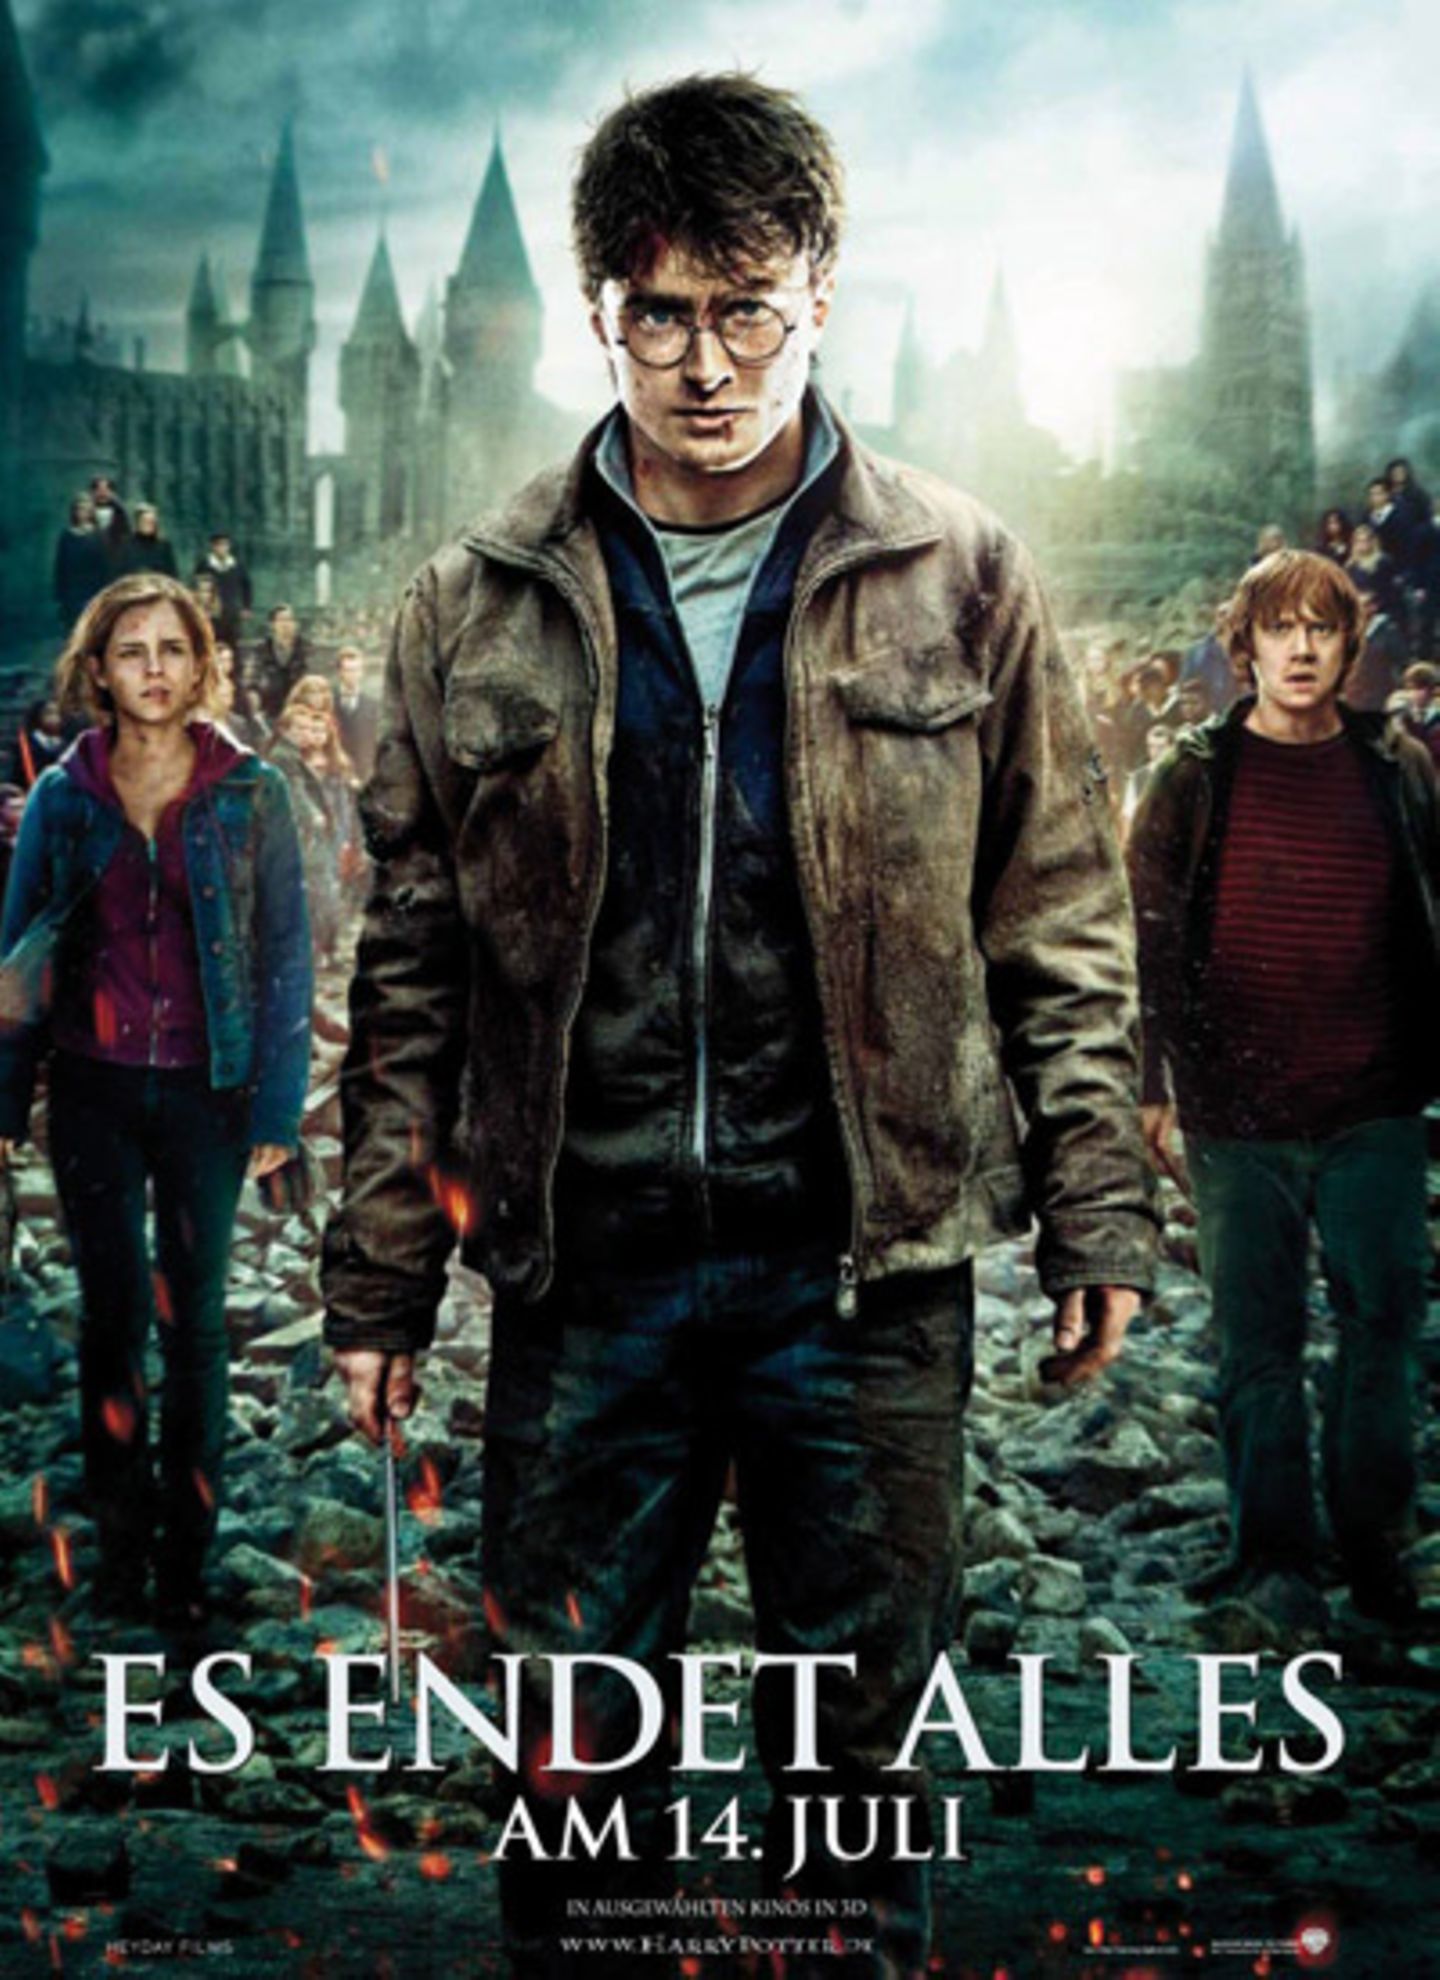 Am 14. Juli startet der zweite Teil Harry Potter-Finales "Harry Potter und die Heiligtümer des Todes" in den Kinos.